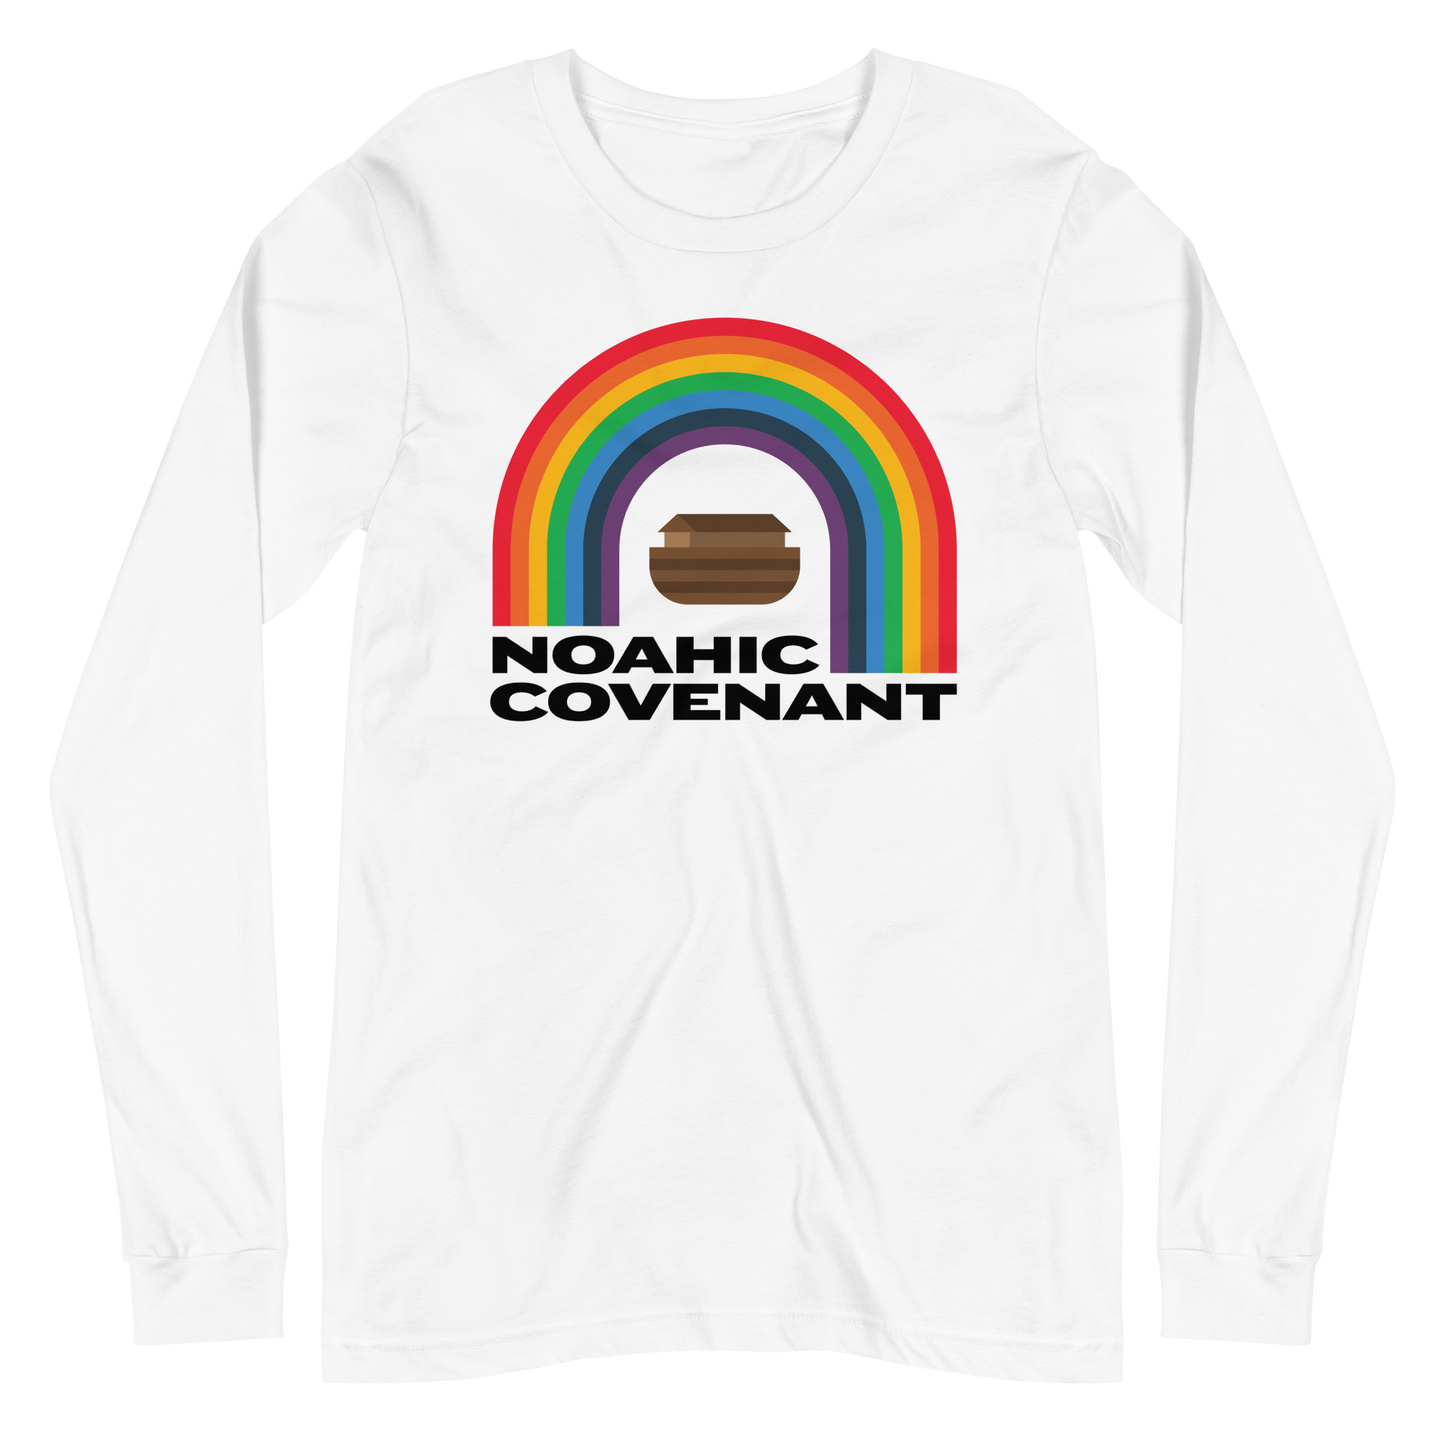 Noahic Covenant Long Sleeve Shirt